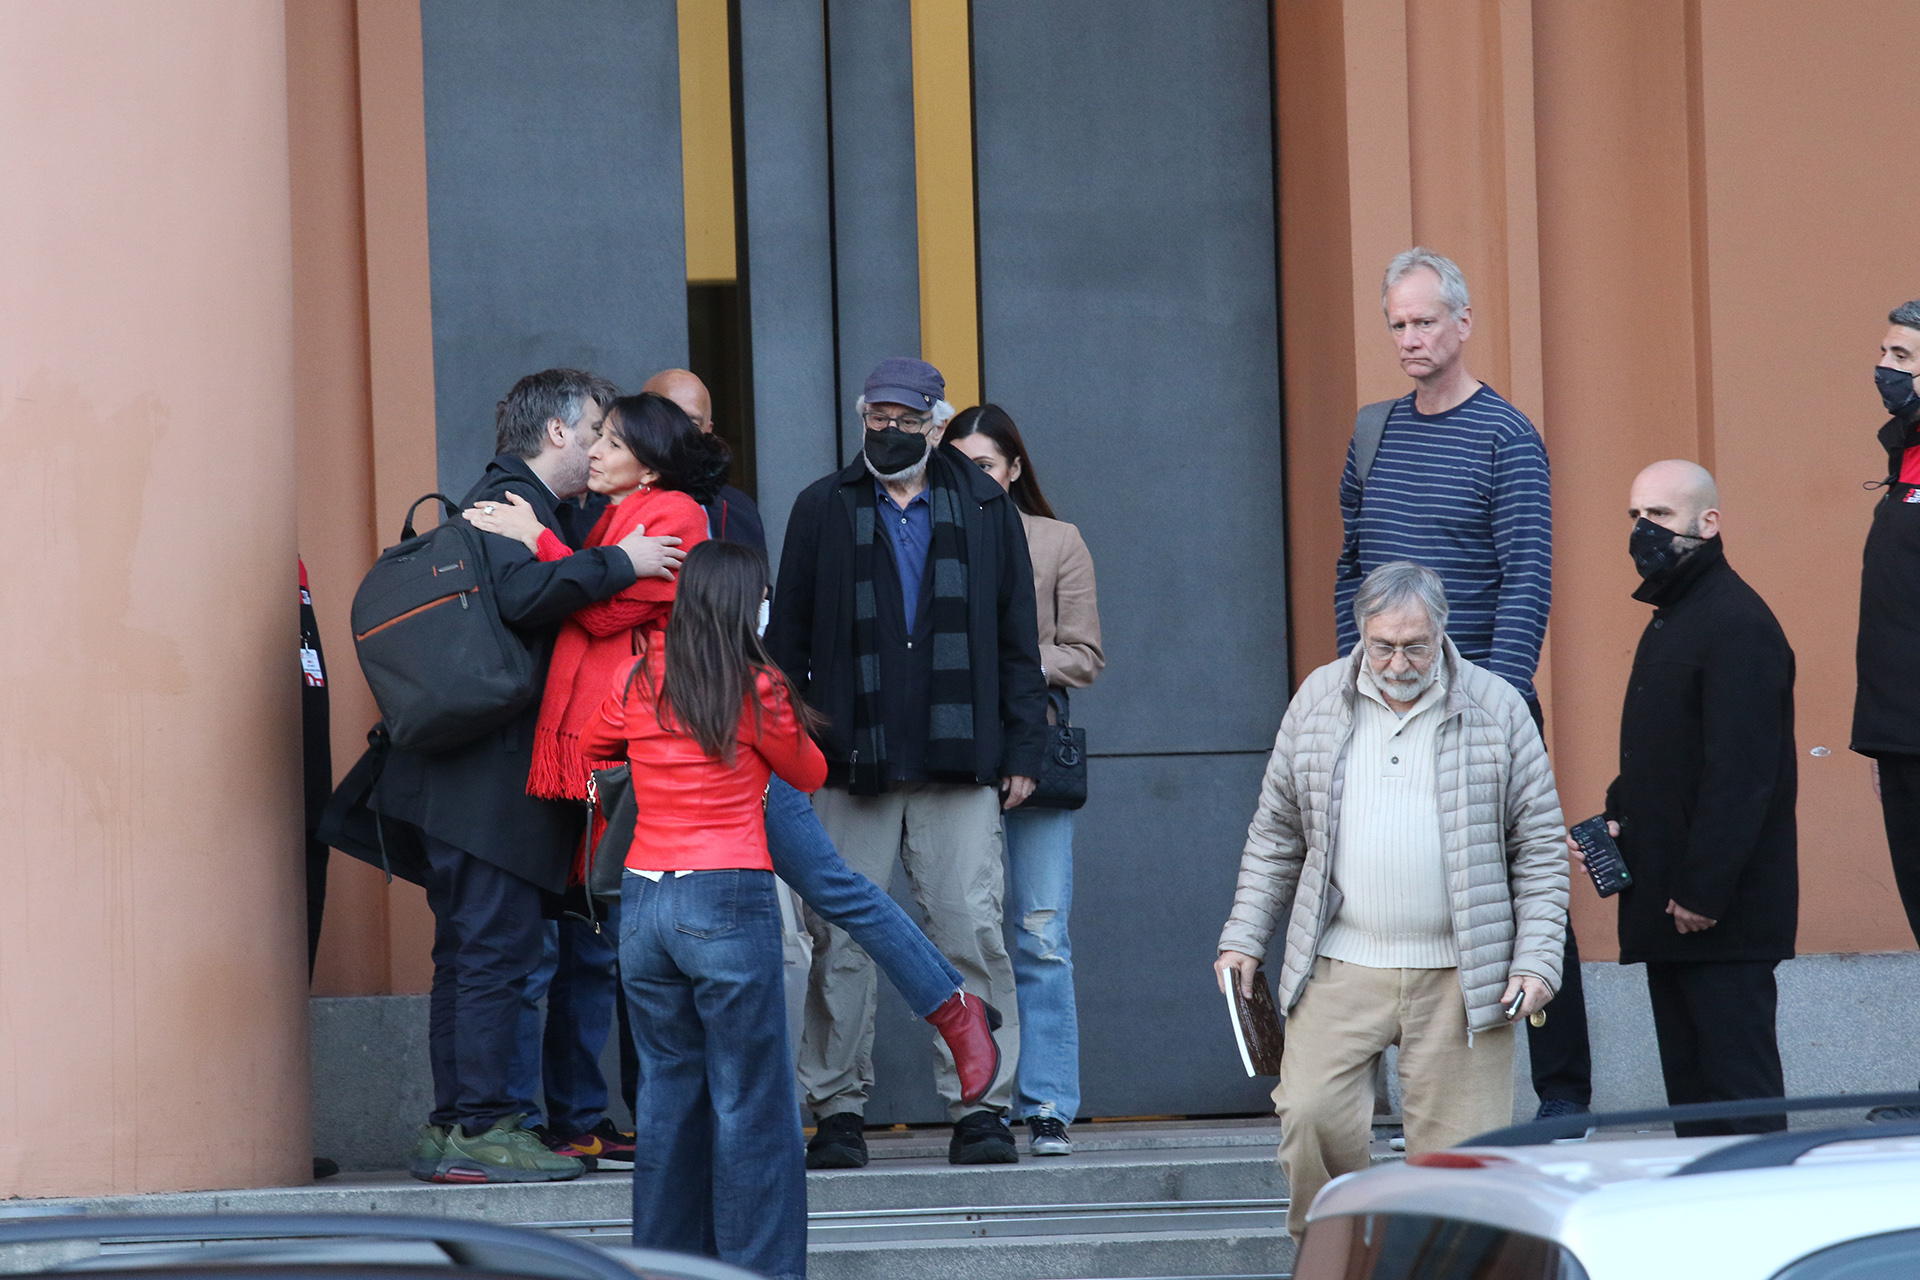 Semanas atrás Luis Brandoni filmó con Robert De Niro la serie Nada en Buenos Aires. No se comunicaban ni en inglés ni español sino en italiano (Foto: Ramiro Souto)
